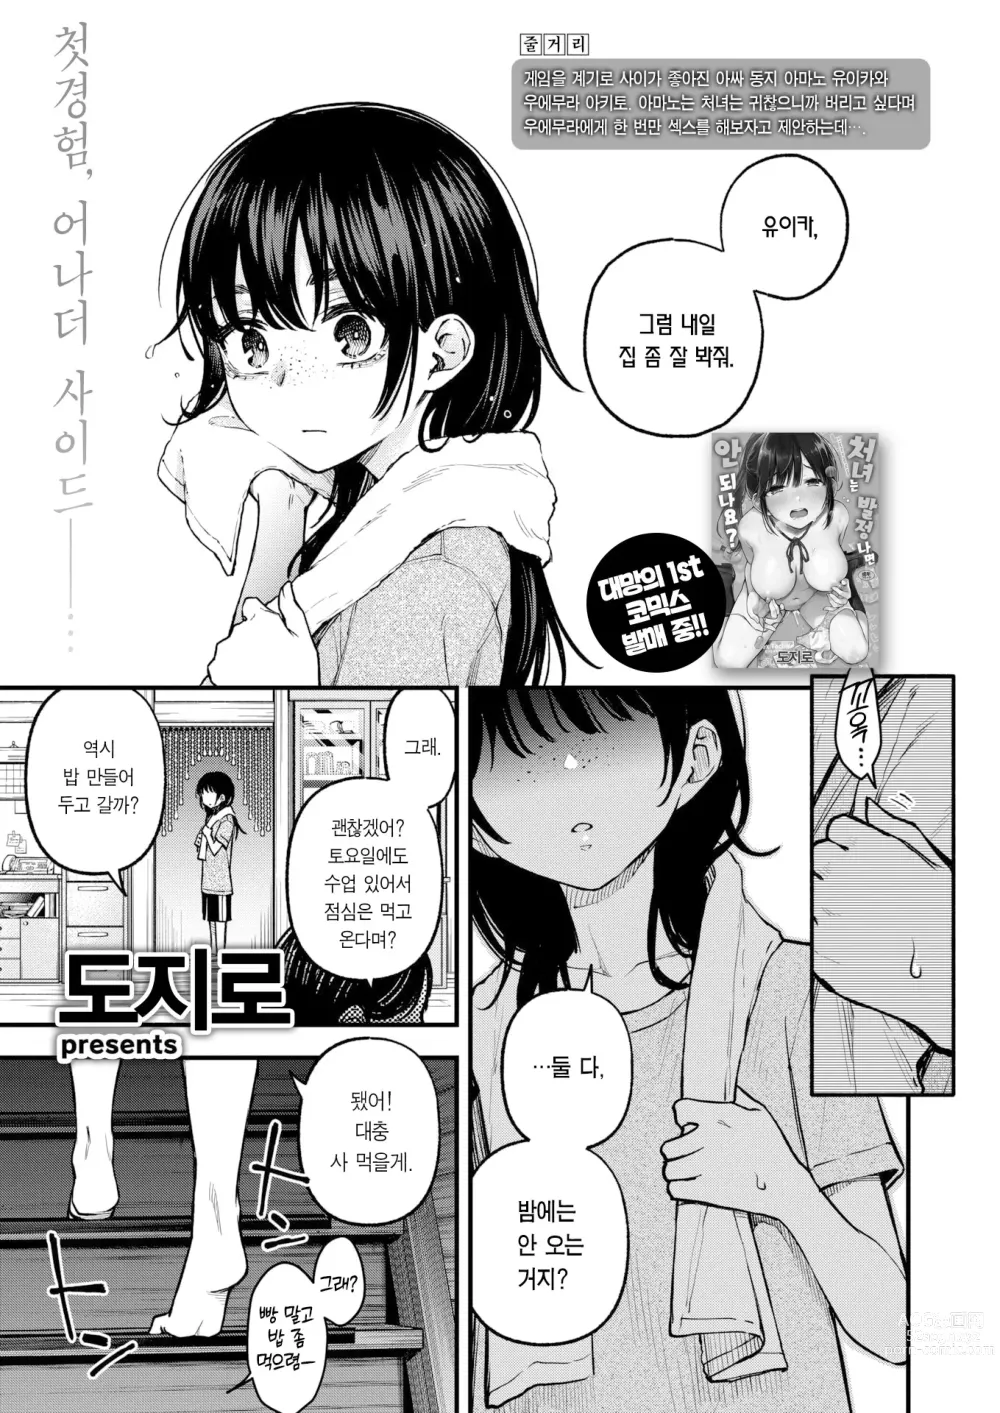 Page 2 of manga 음침한 애들끼리 하는 섹스가 제일 야하다 #2 ―아마노 유이카의 경우―